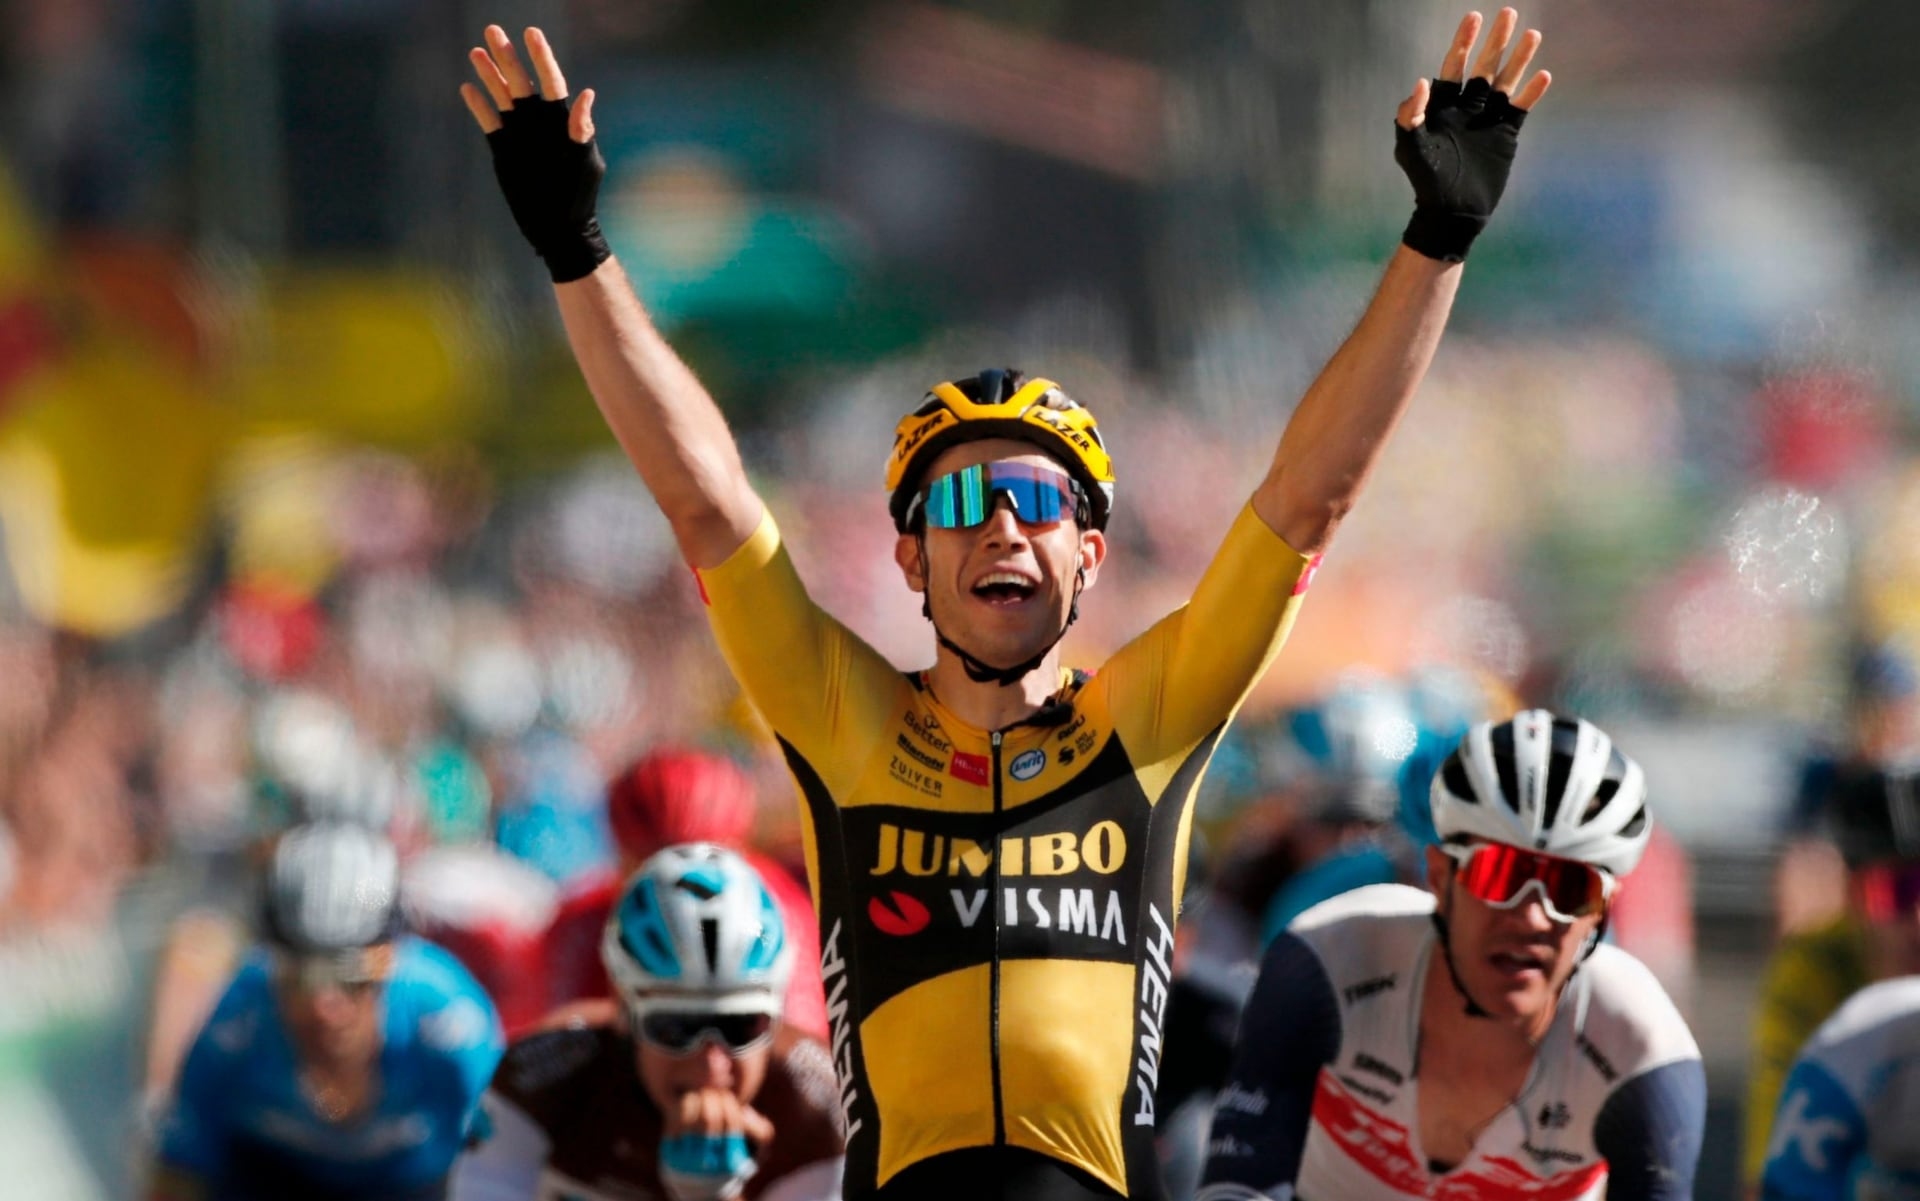 Белгиецът Ваут ван Арт от отбора Jumbo Visma спечели седмия етап